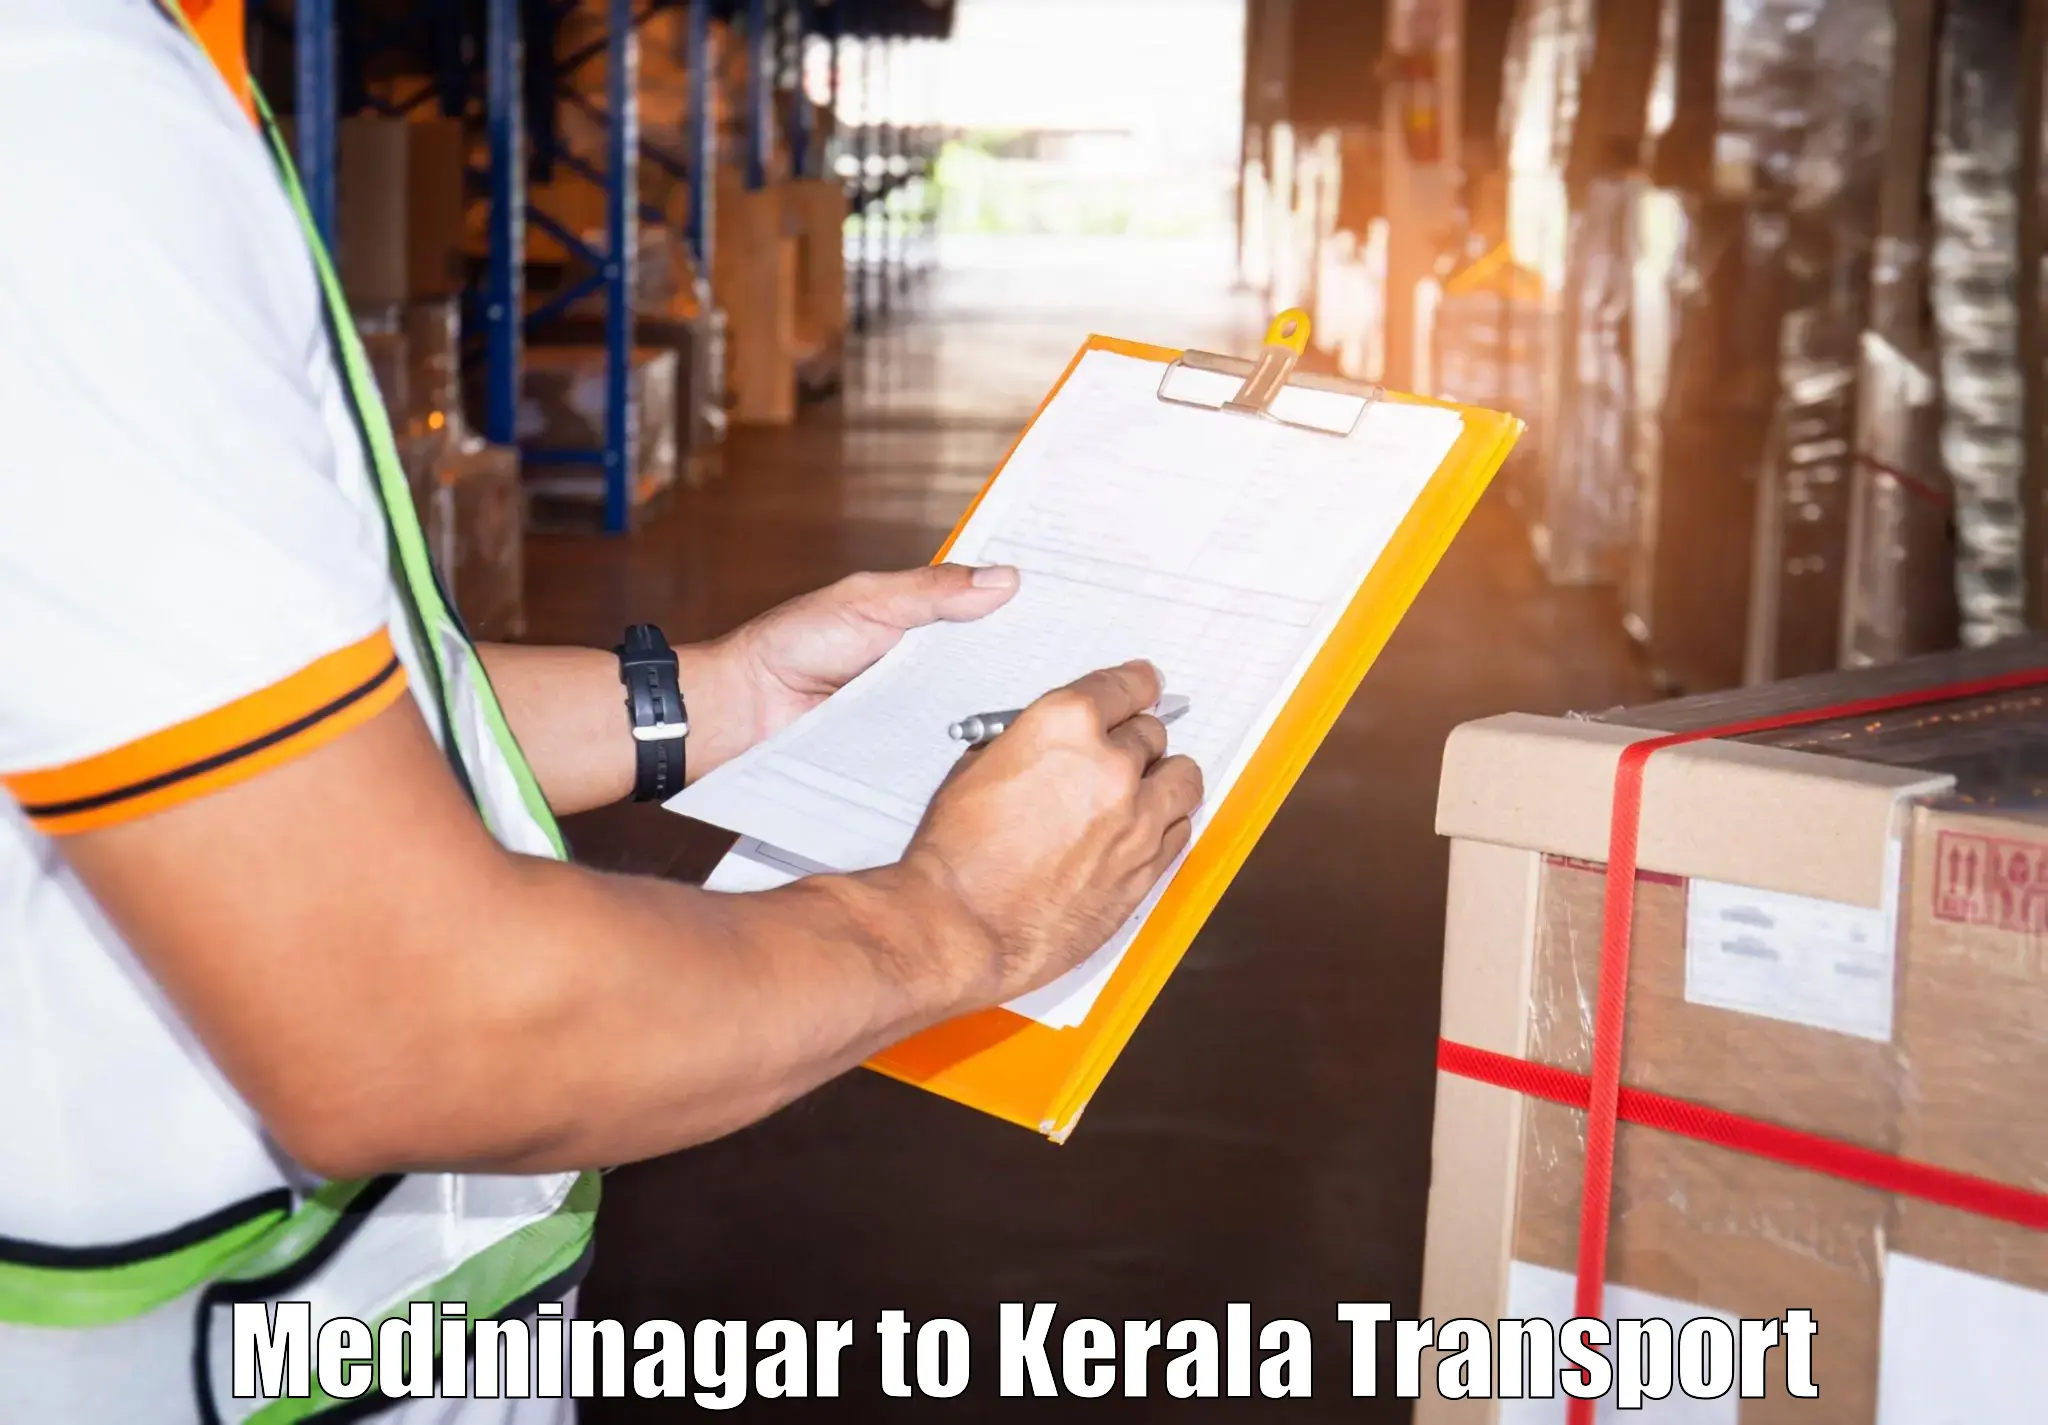 Transport in sharing Medininagar to Kerala